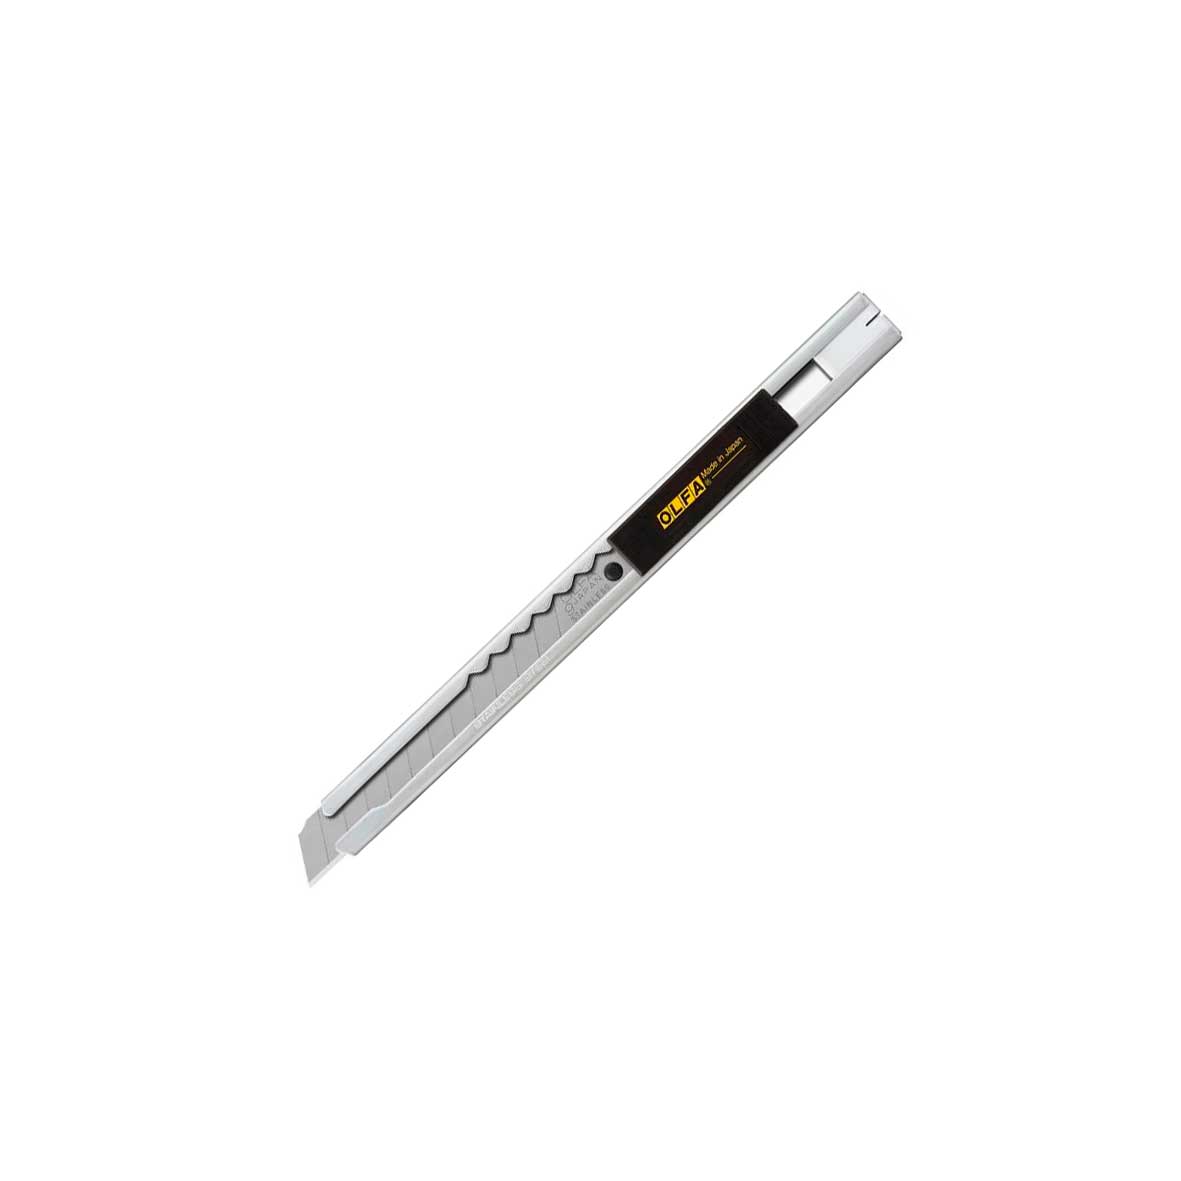 Olfa 9mm SVR-1 Stainless Steel Slide-Lock Knife (8B) Online USA.